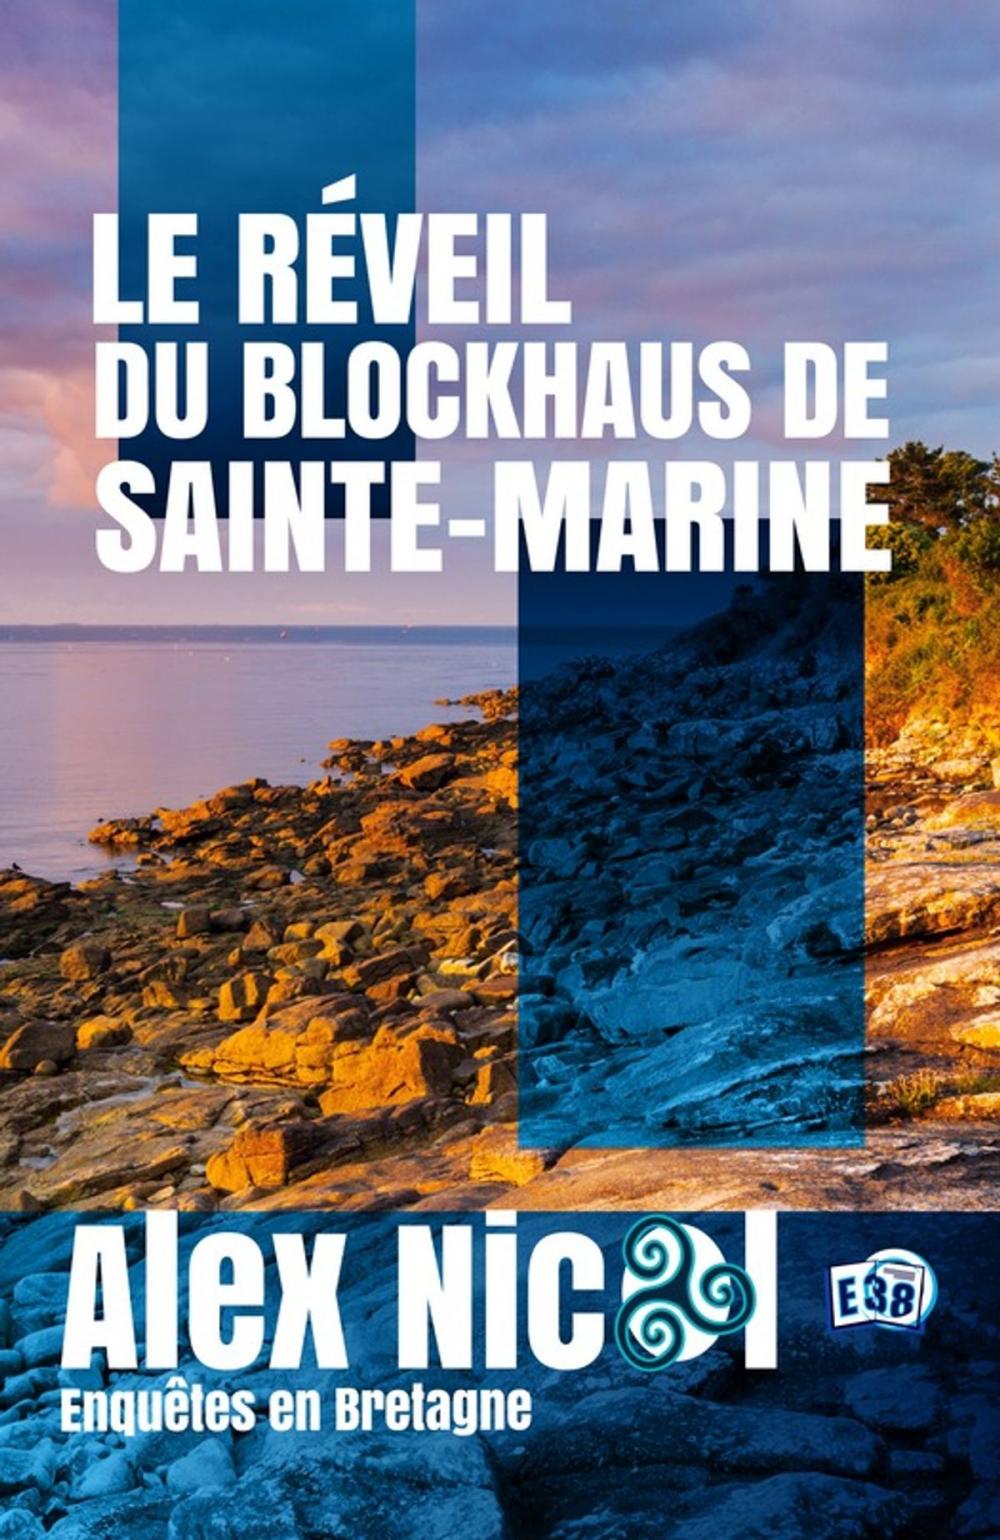 Big bigCover of Le réveil du blockhaus de Sainte-Marine